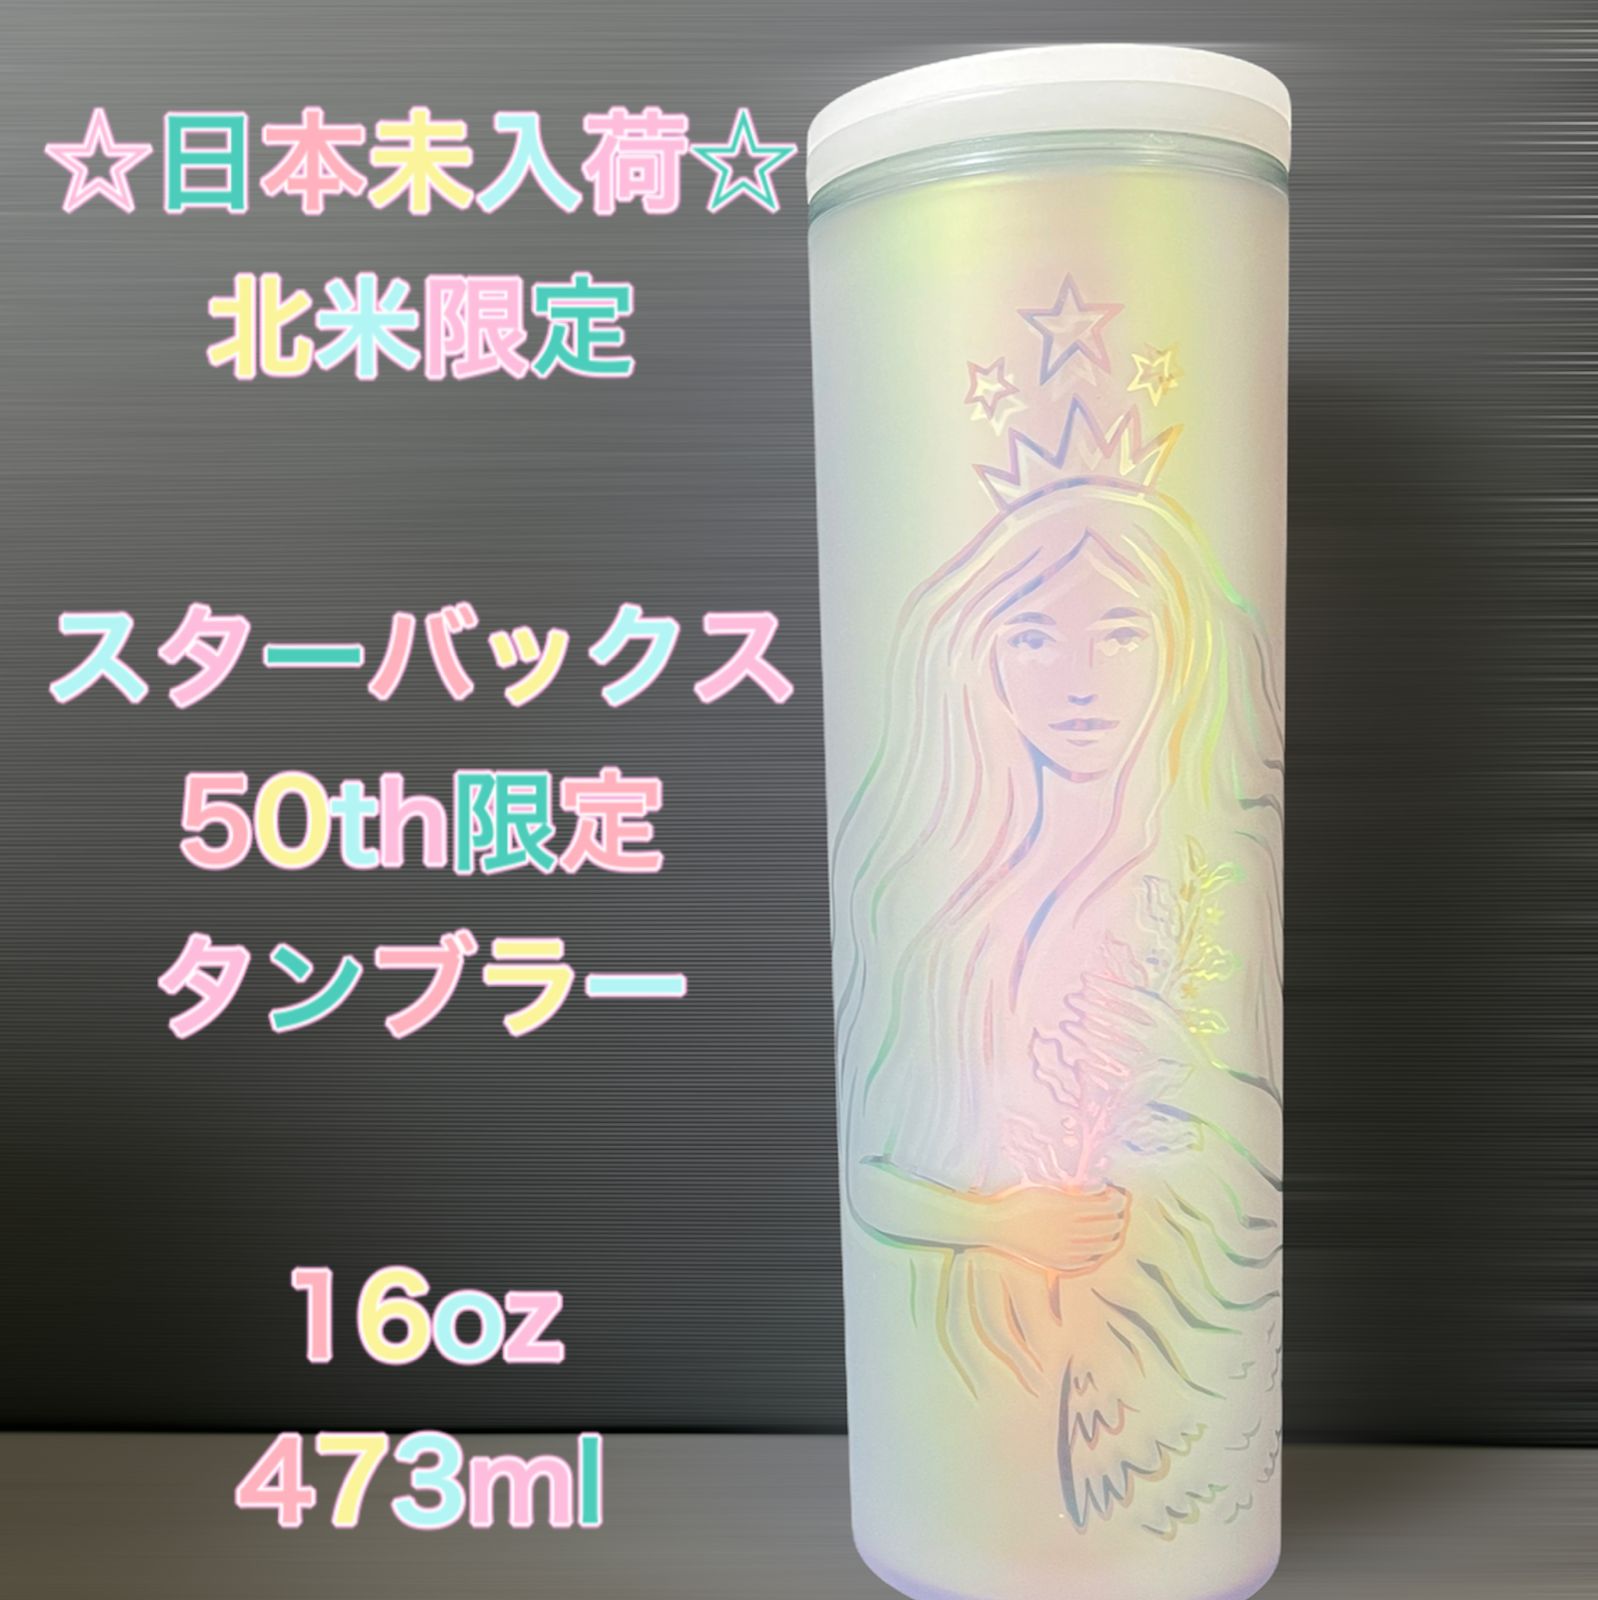 ☆北米限定☆ 50th記念ボトル 日本未使用 スターバックス タンブラー 